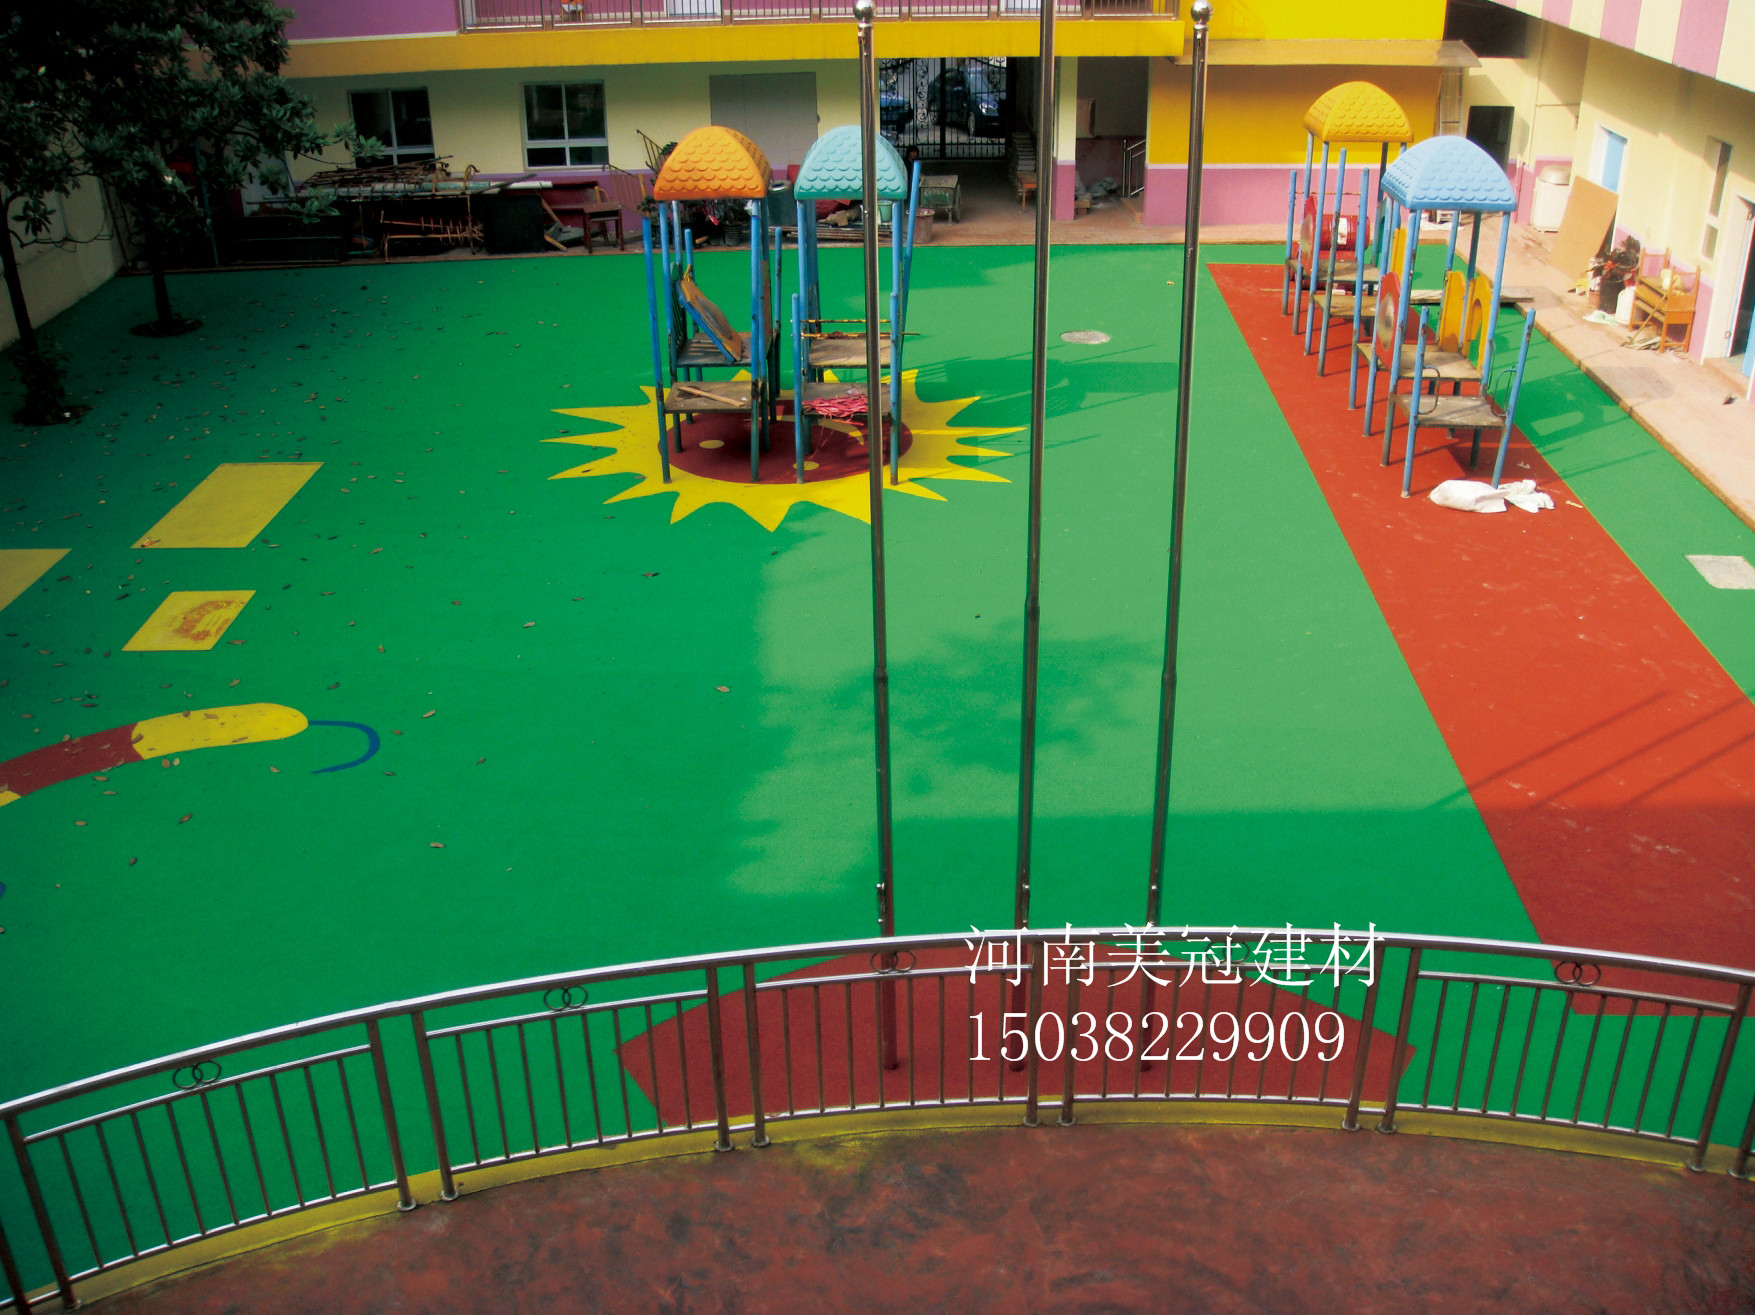 腾方卡通PVC儿童地板为暑期幼儿园装修锦上添花-腾方pvc地板4008798128